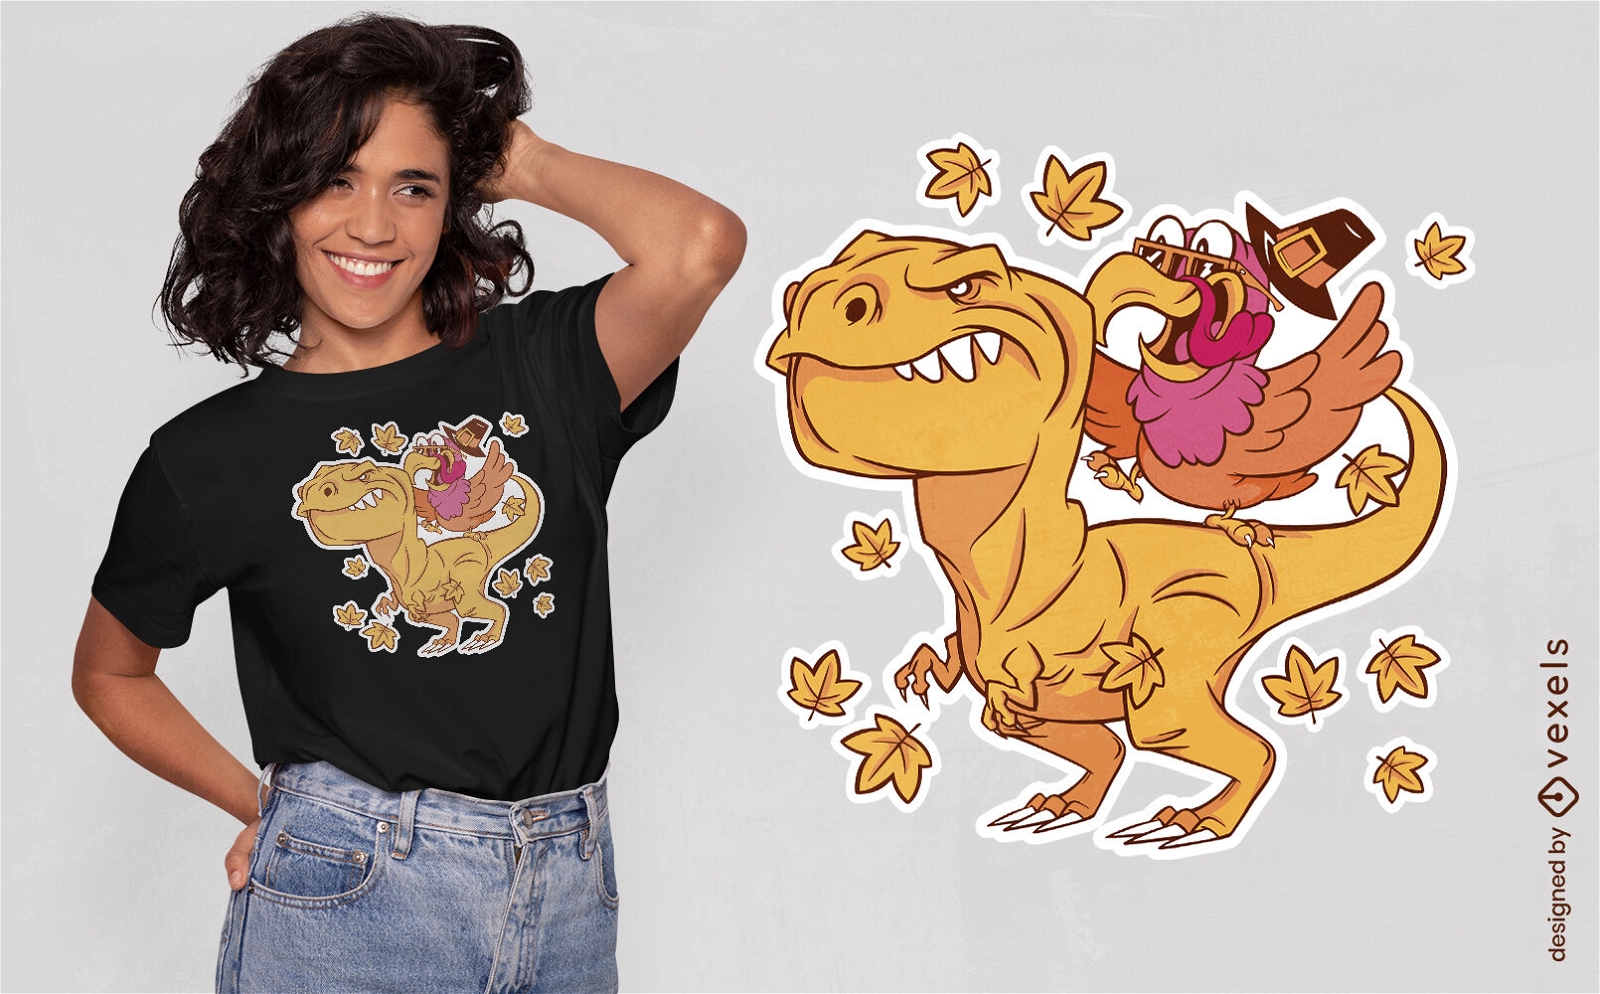 Turkey and t-rex cartoon t-shirt design